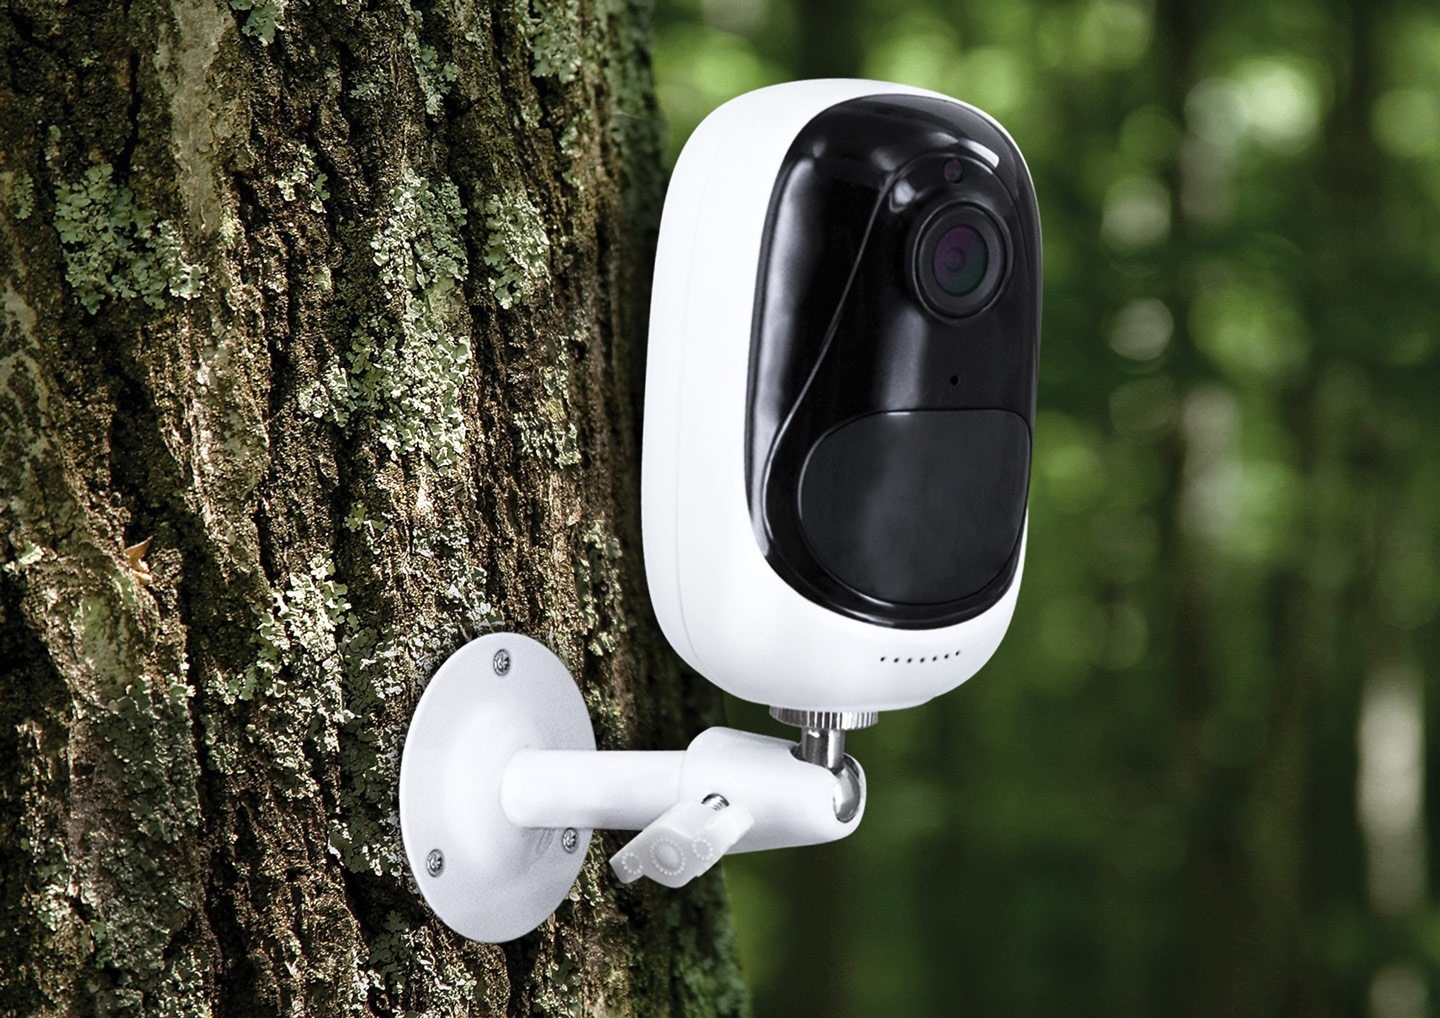 Accessorio mobile - Nilox Smart Security Camera (Bianco ...